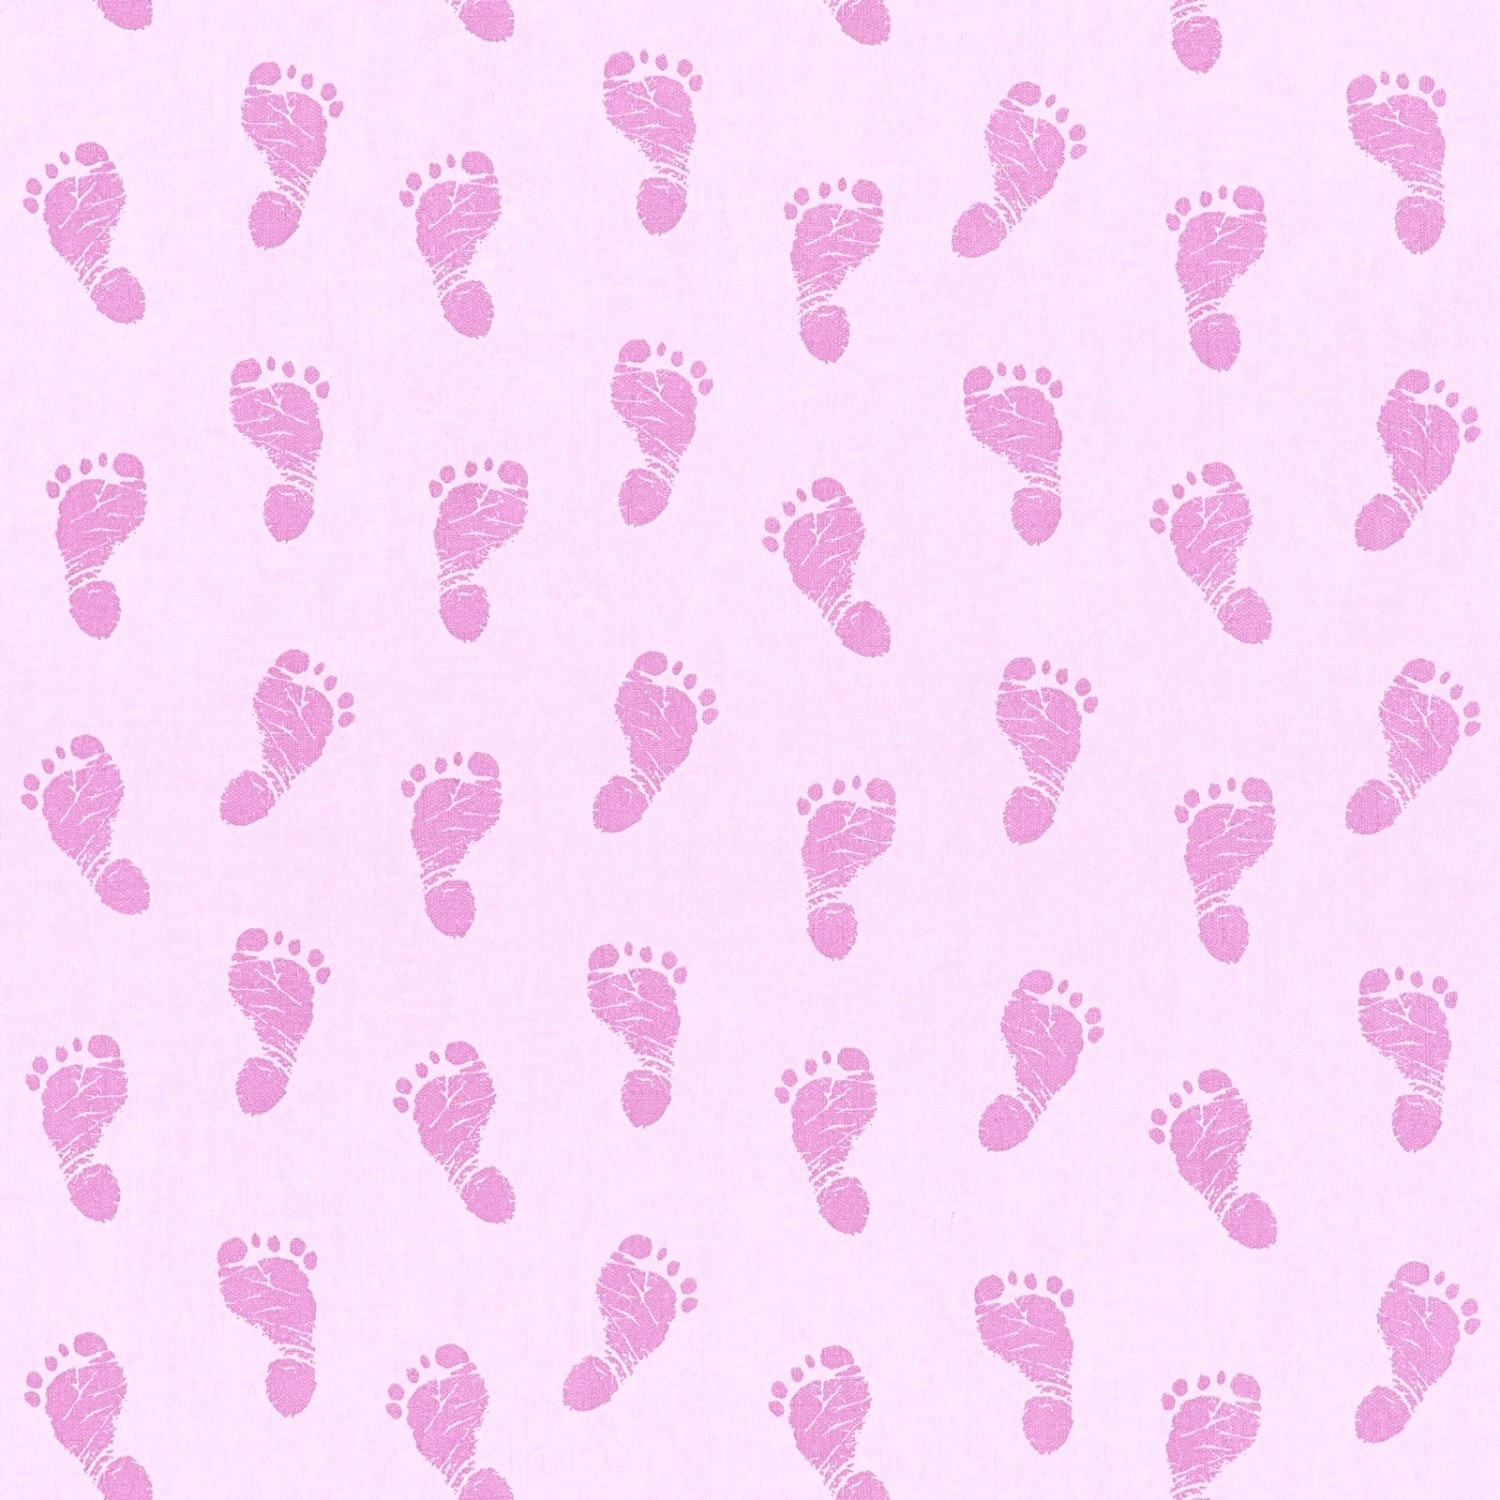 Bricoflor Baby Tapete für Mädchen Rosa Tapete mit Fußabdrücken in Pink Ideal für Mädchenzimmer Vlies Kindertapete mit Ba